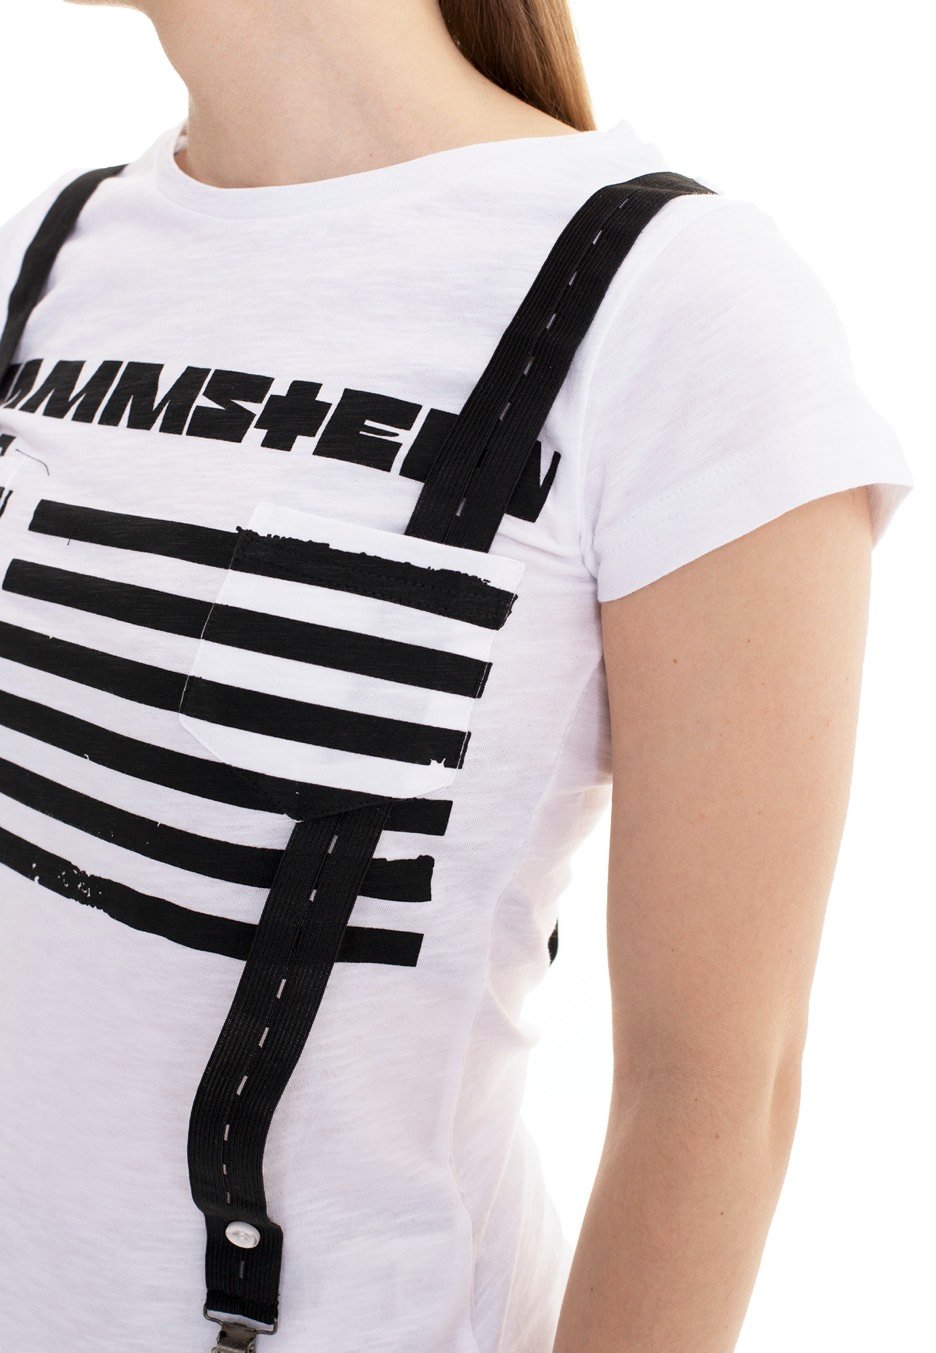 Rammstein - Suspender White - Girly